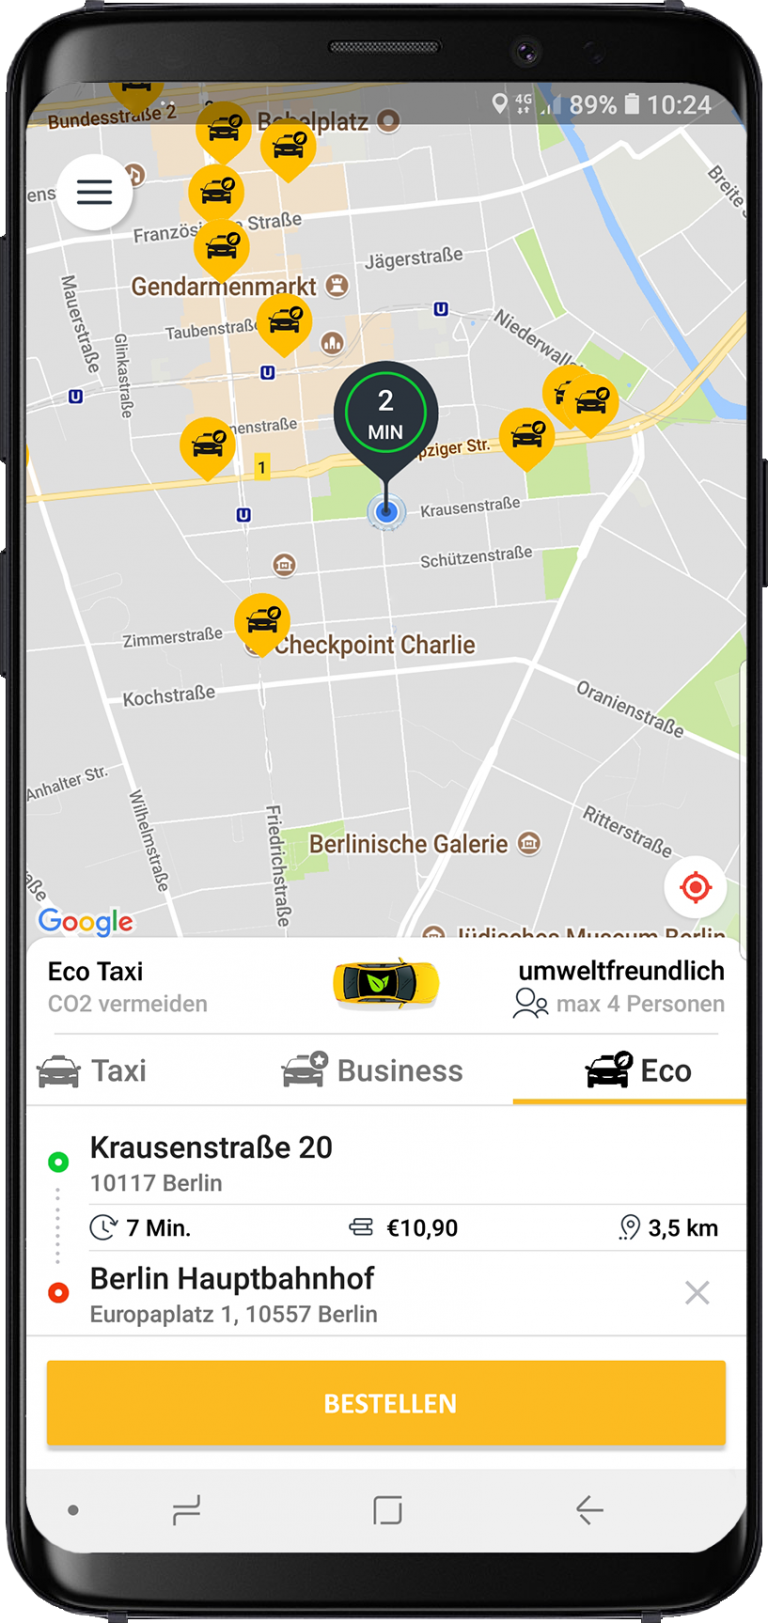 Как удалить карту из приложения такси